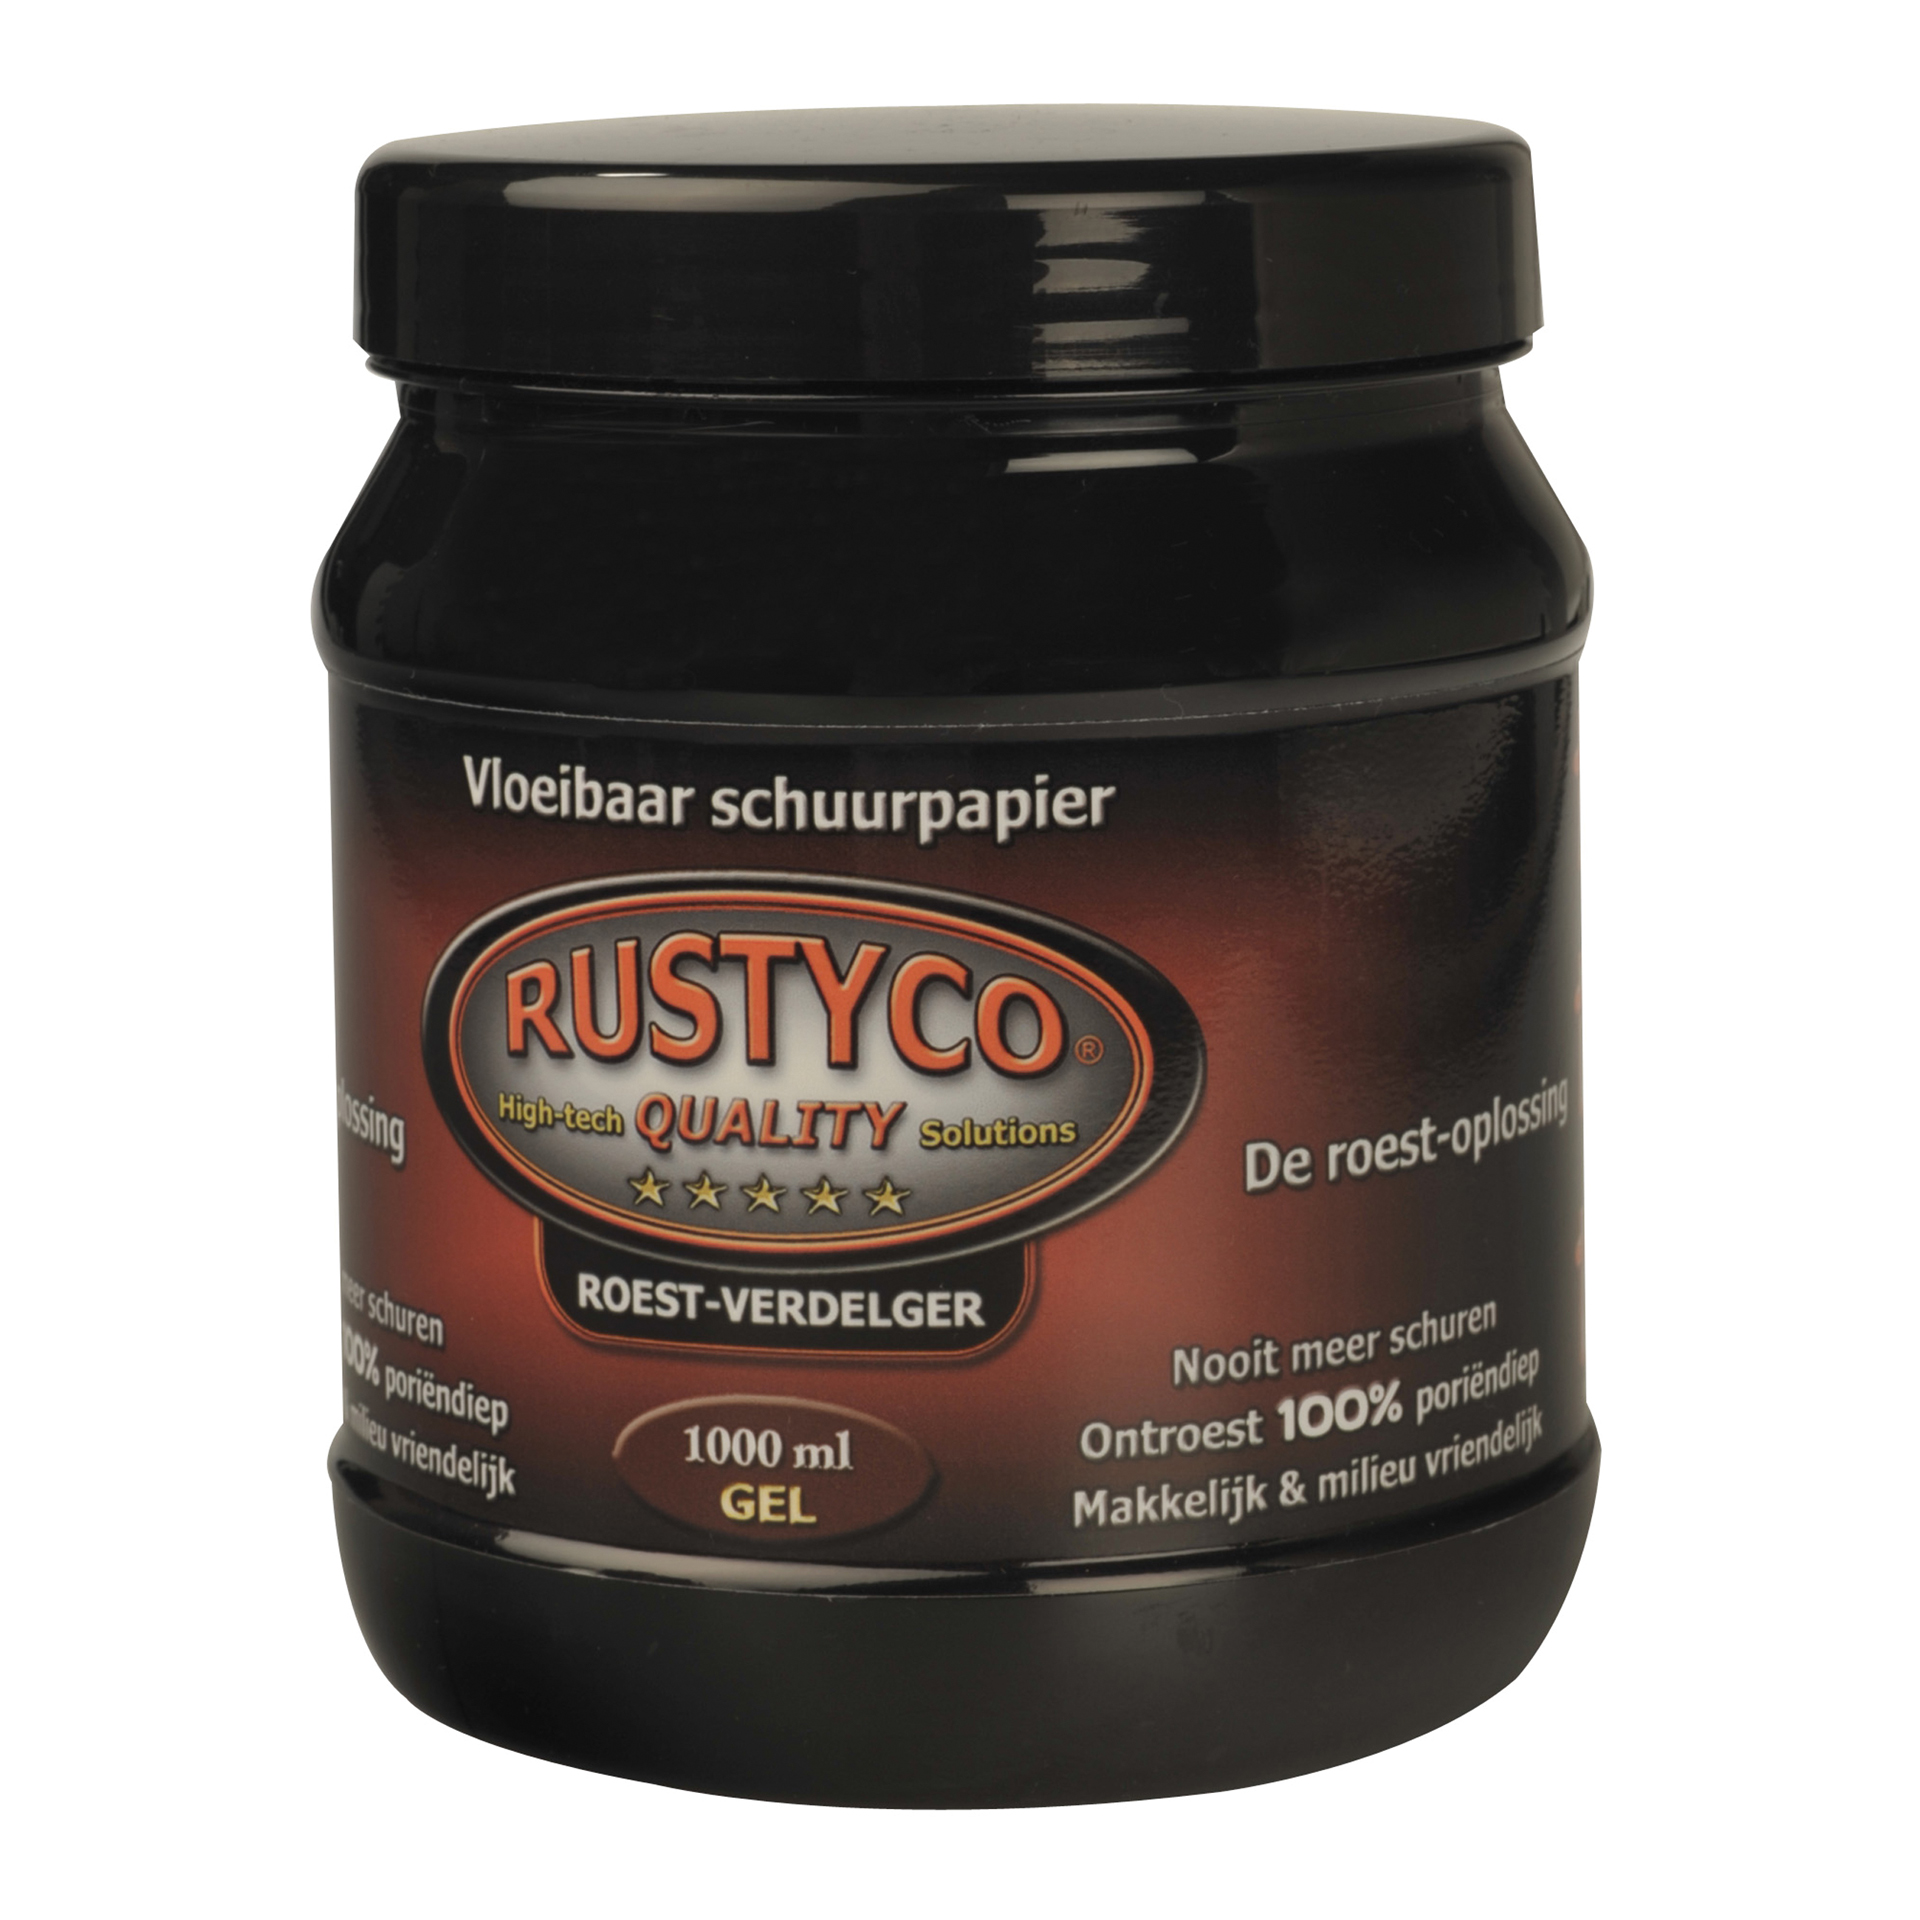 Rustyco 1004 Roestoplosser gel 1L (1840004)